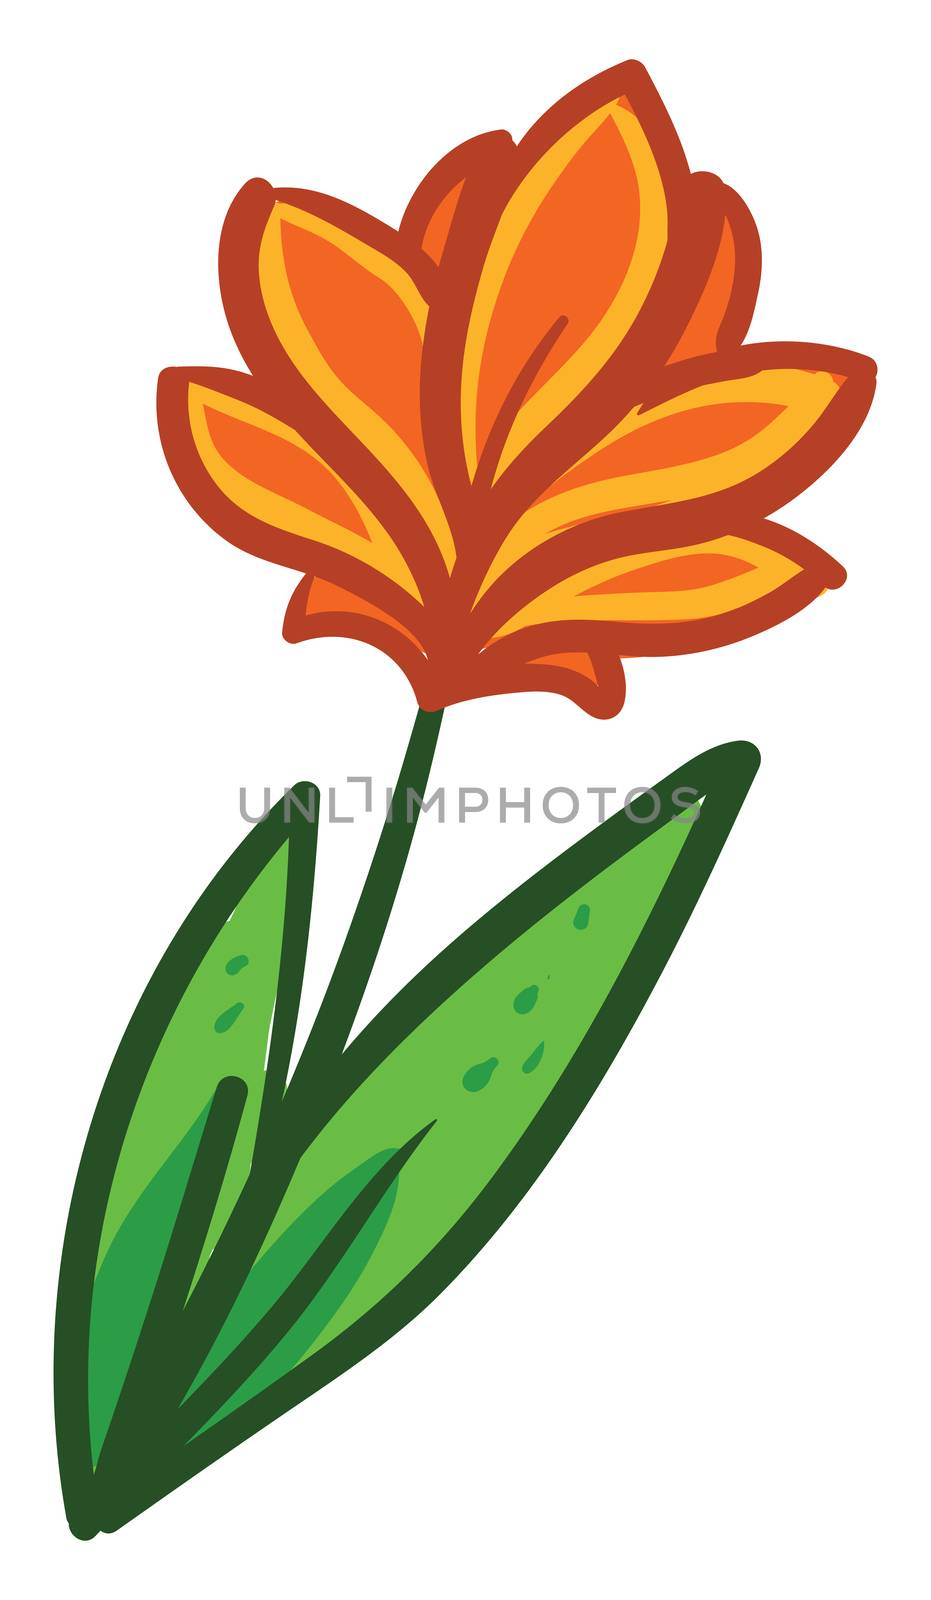 Orange flower , illustration, vector on white background by Morphart